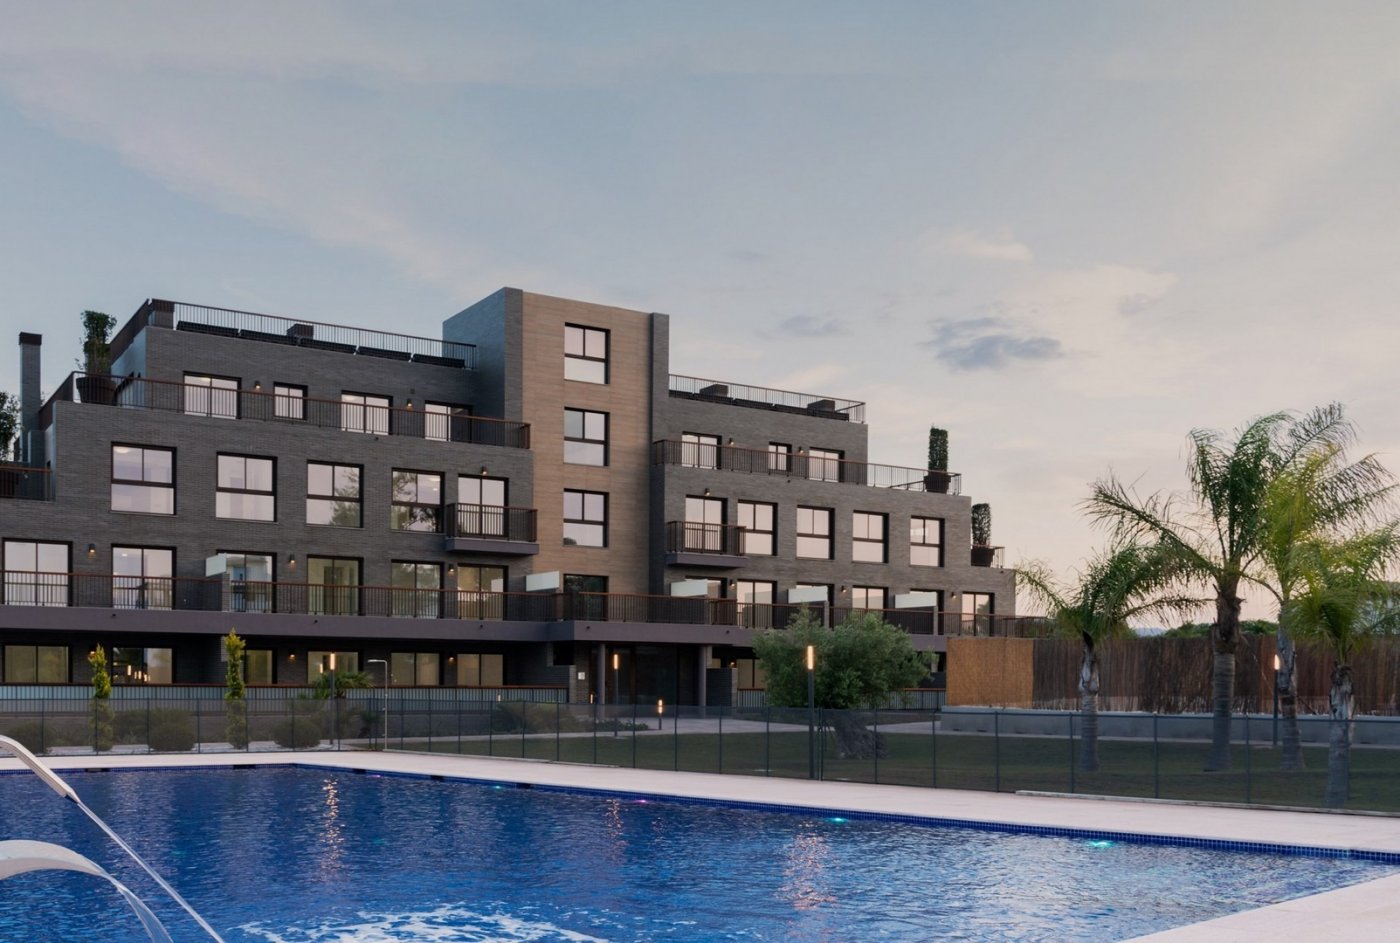 Appartement de nouvelle construction 2 chambres, piscine, parking et débarras à 400 m de la plage à Denia (Alicante)